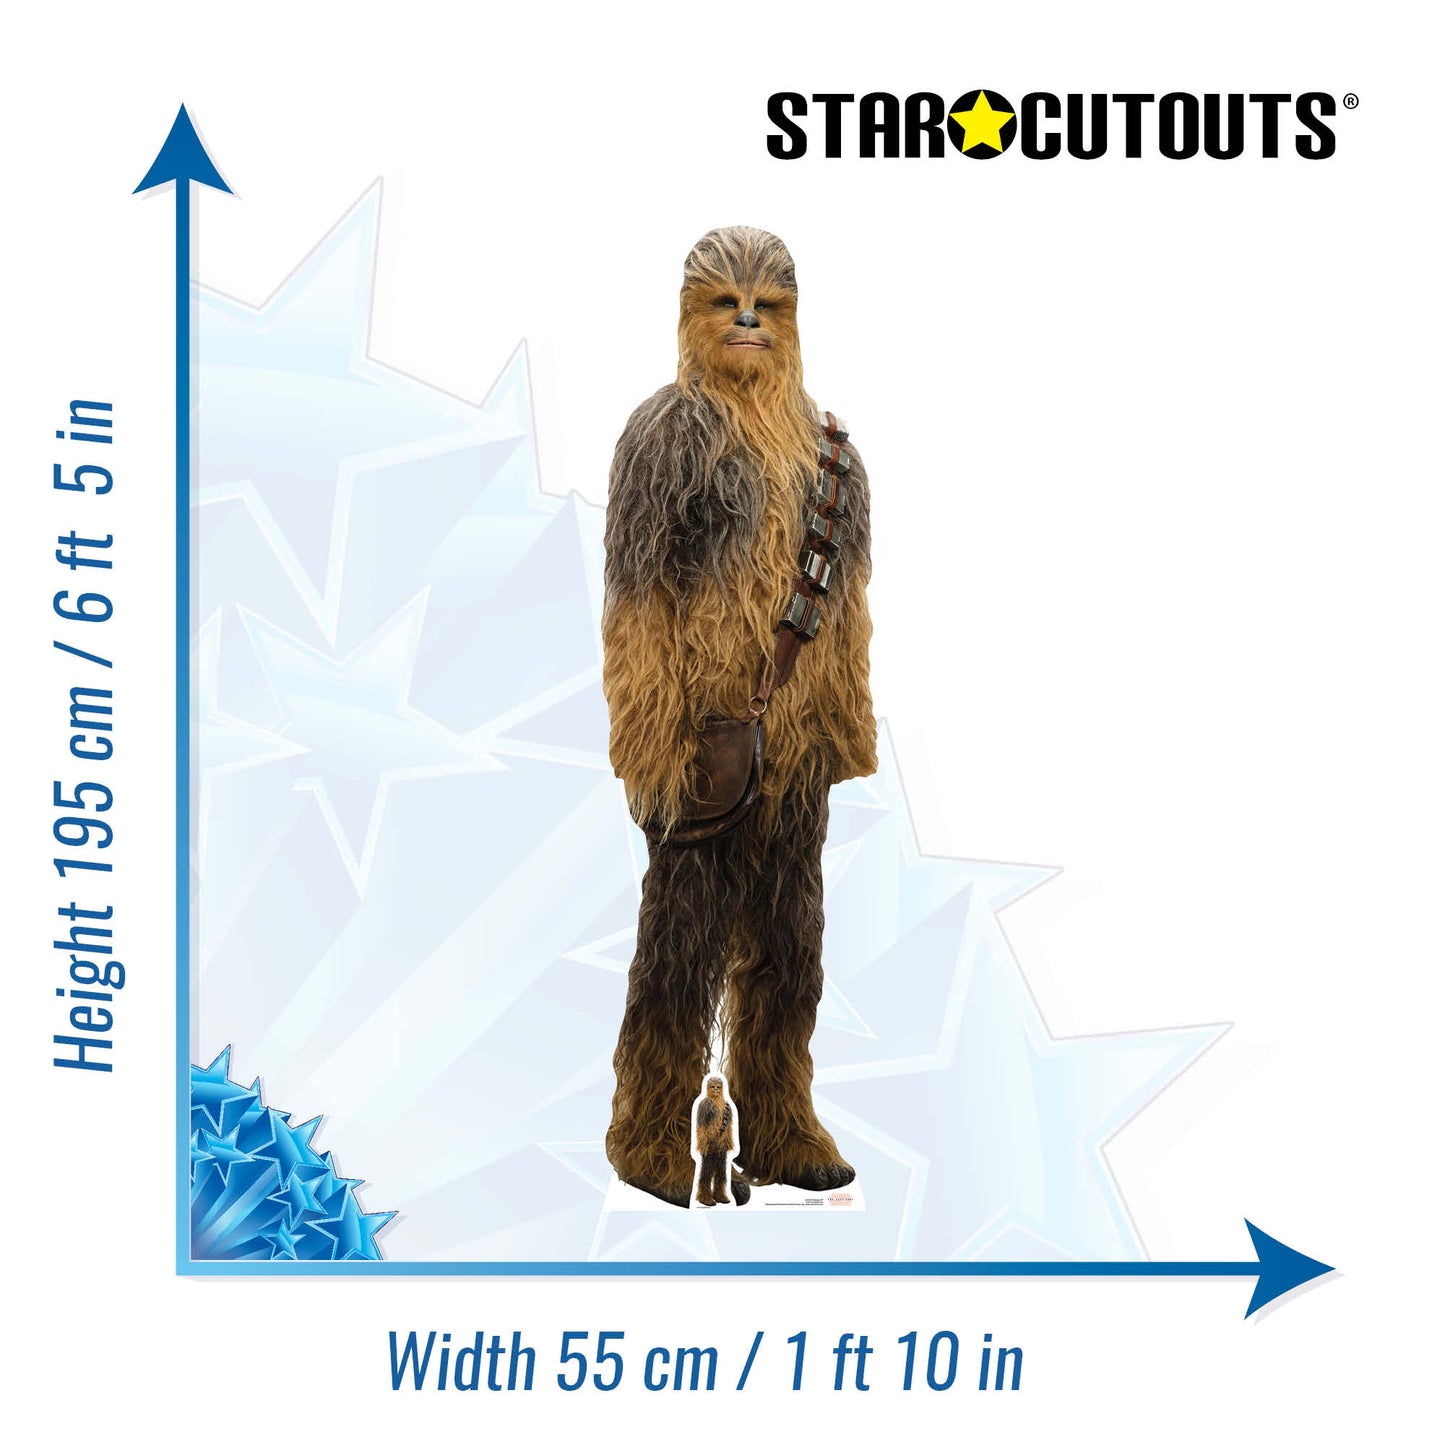 Chewbacca The Last Jedi Cardboard Cut Out Height 195cm